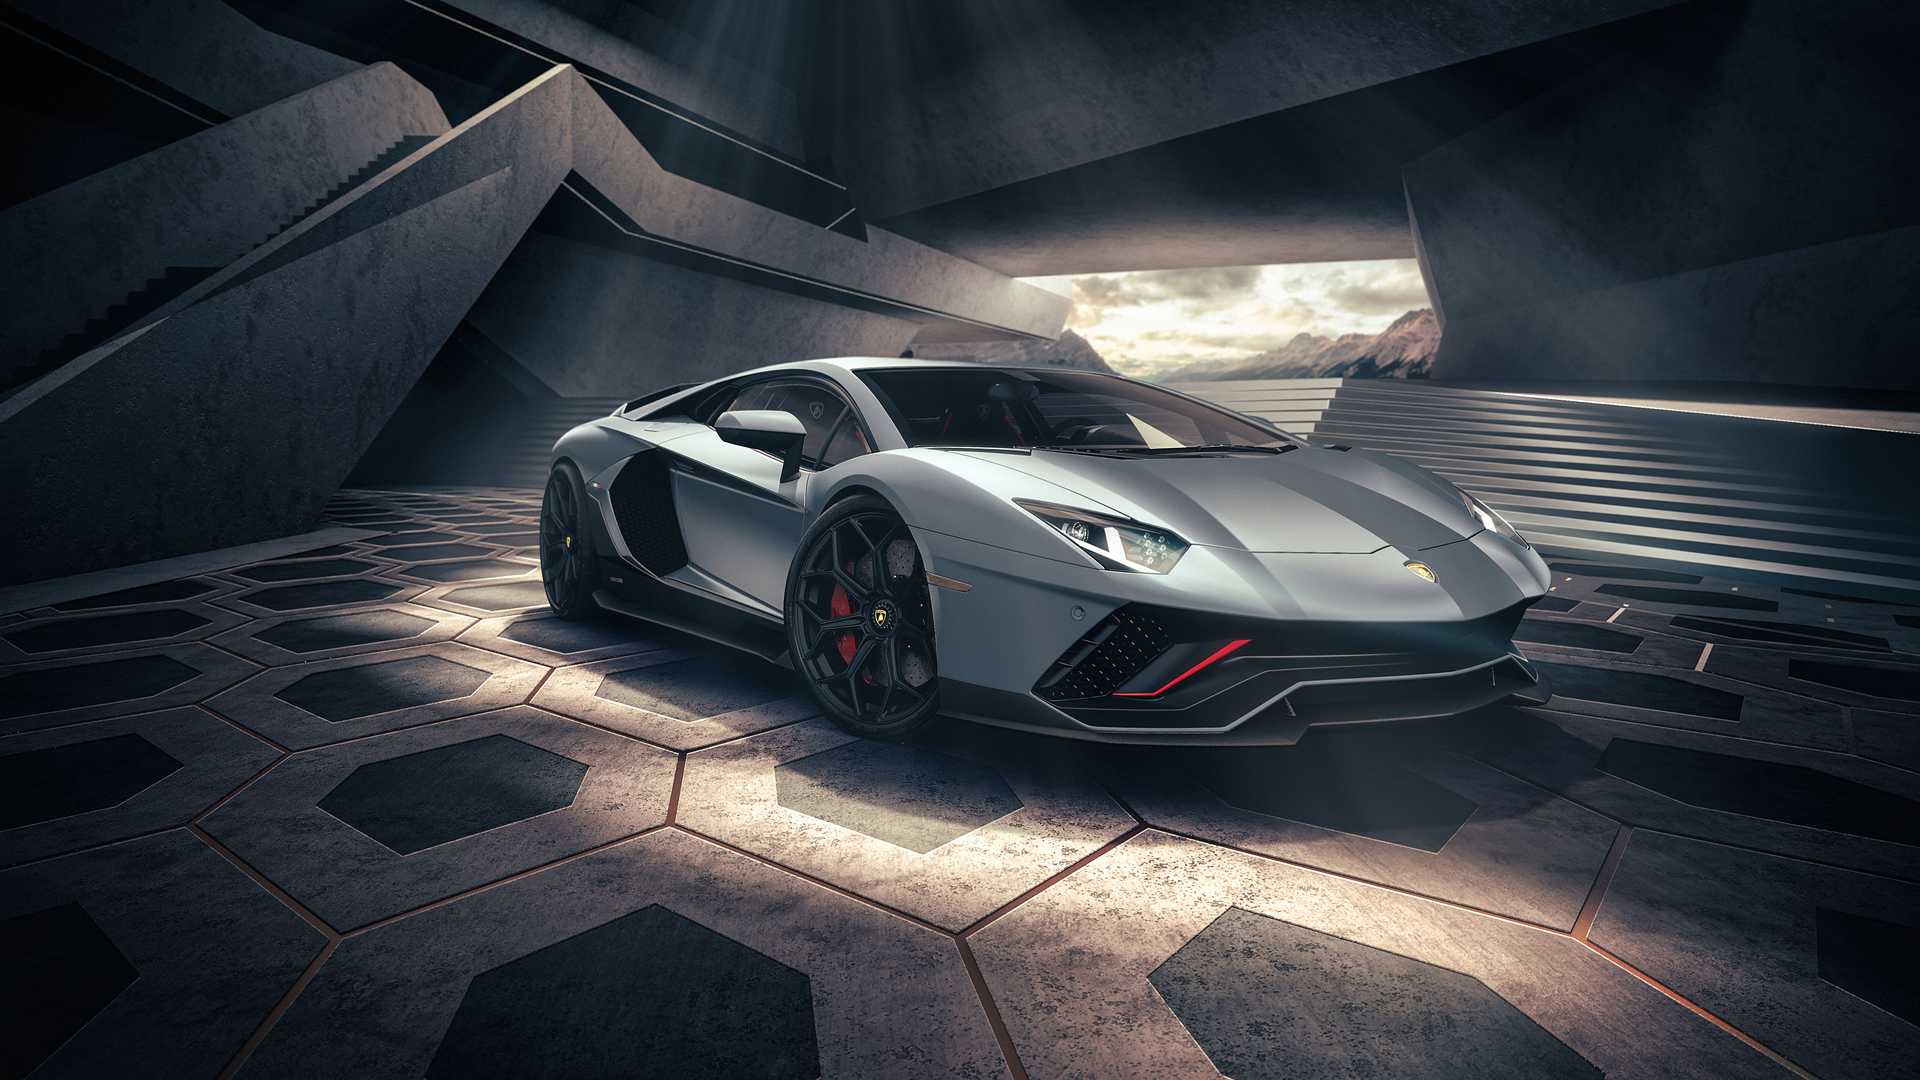 Hậu kỷ nguyên điện hóa, Lamborghini vẫn quyết tâm giữ lại yếu tố nào cho  những siêu xe sau này?